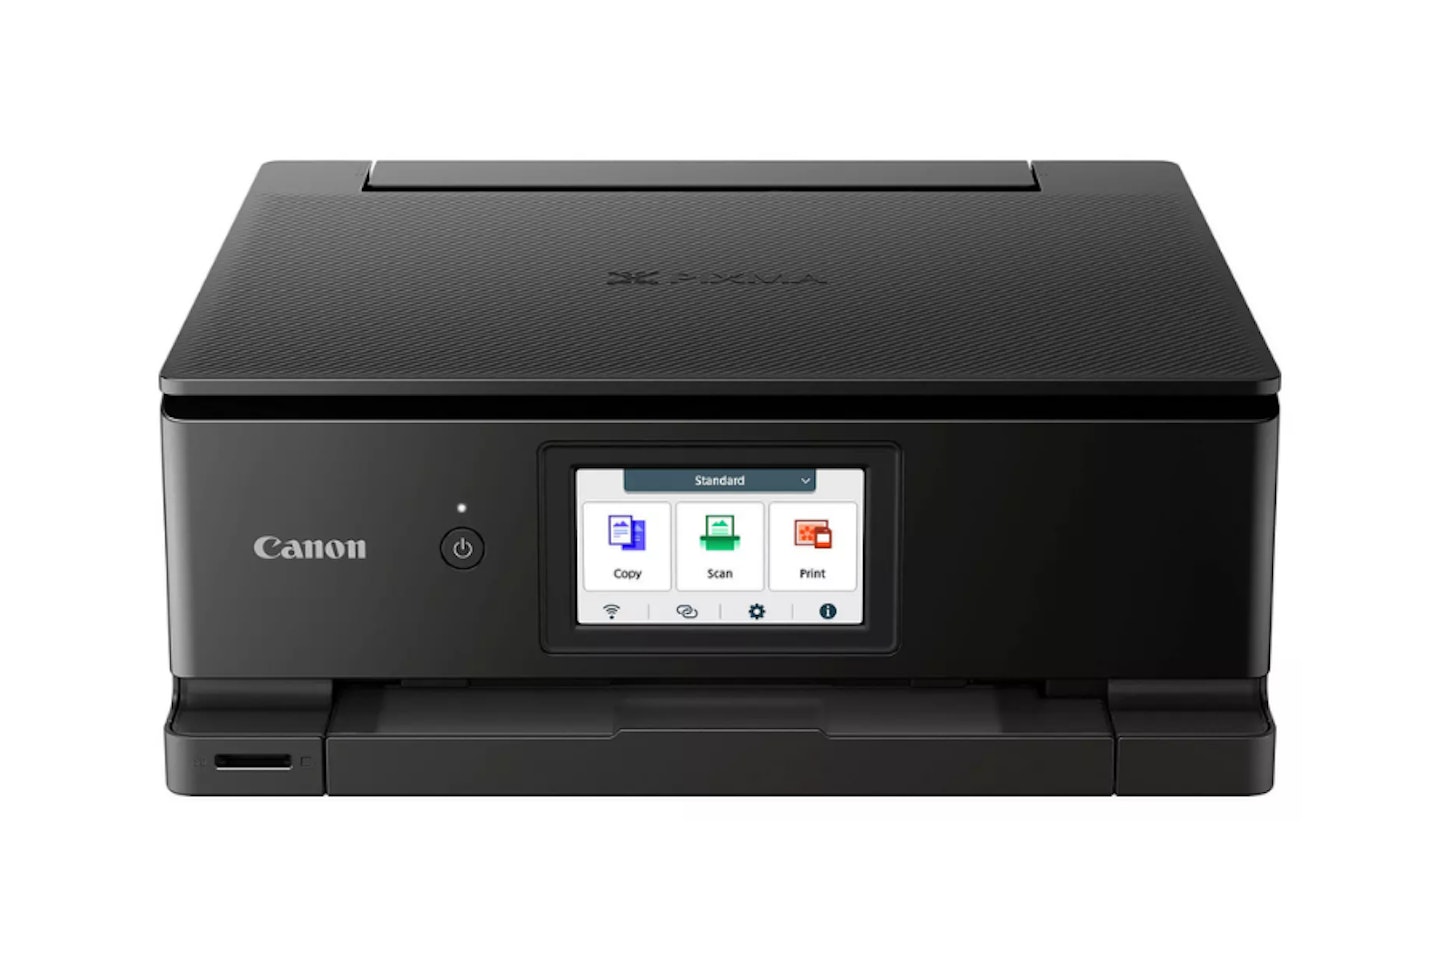 Canon PIXMA TS8750 All-in-One Photo Printer